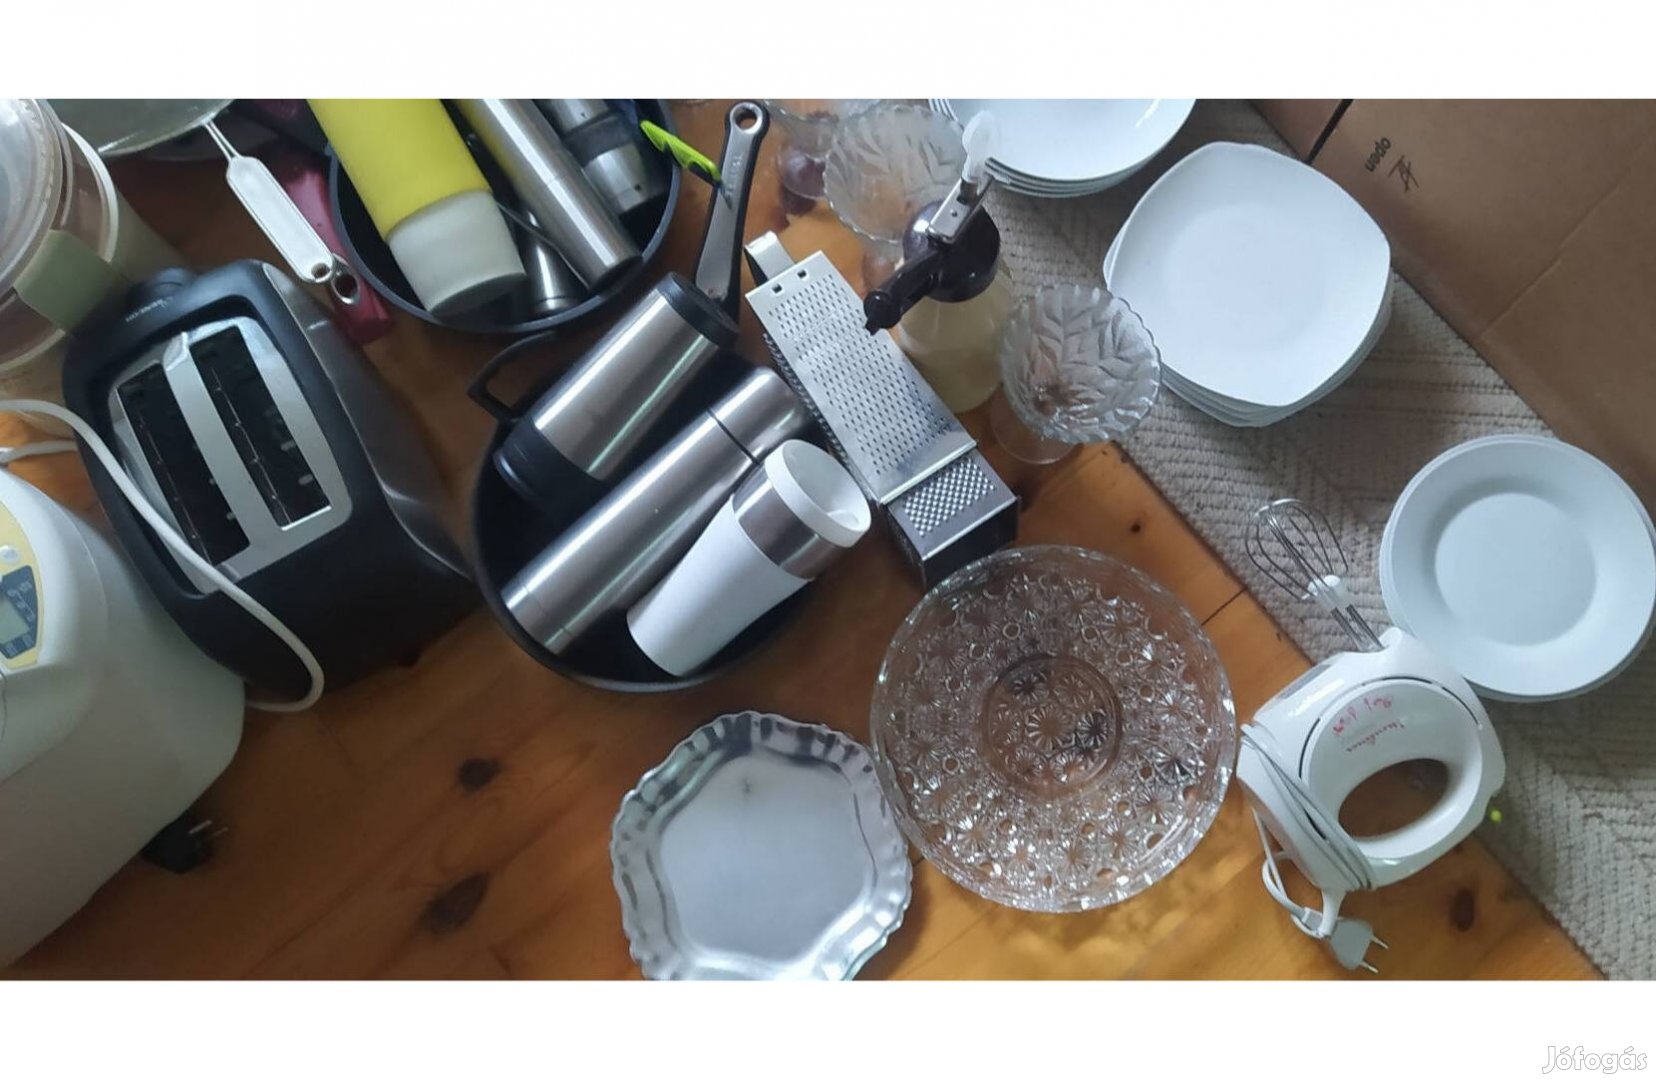 Konyha ürítés tányérok poharak gépek serpenyők